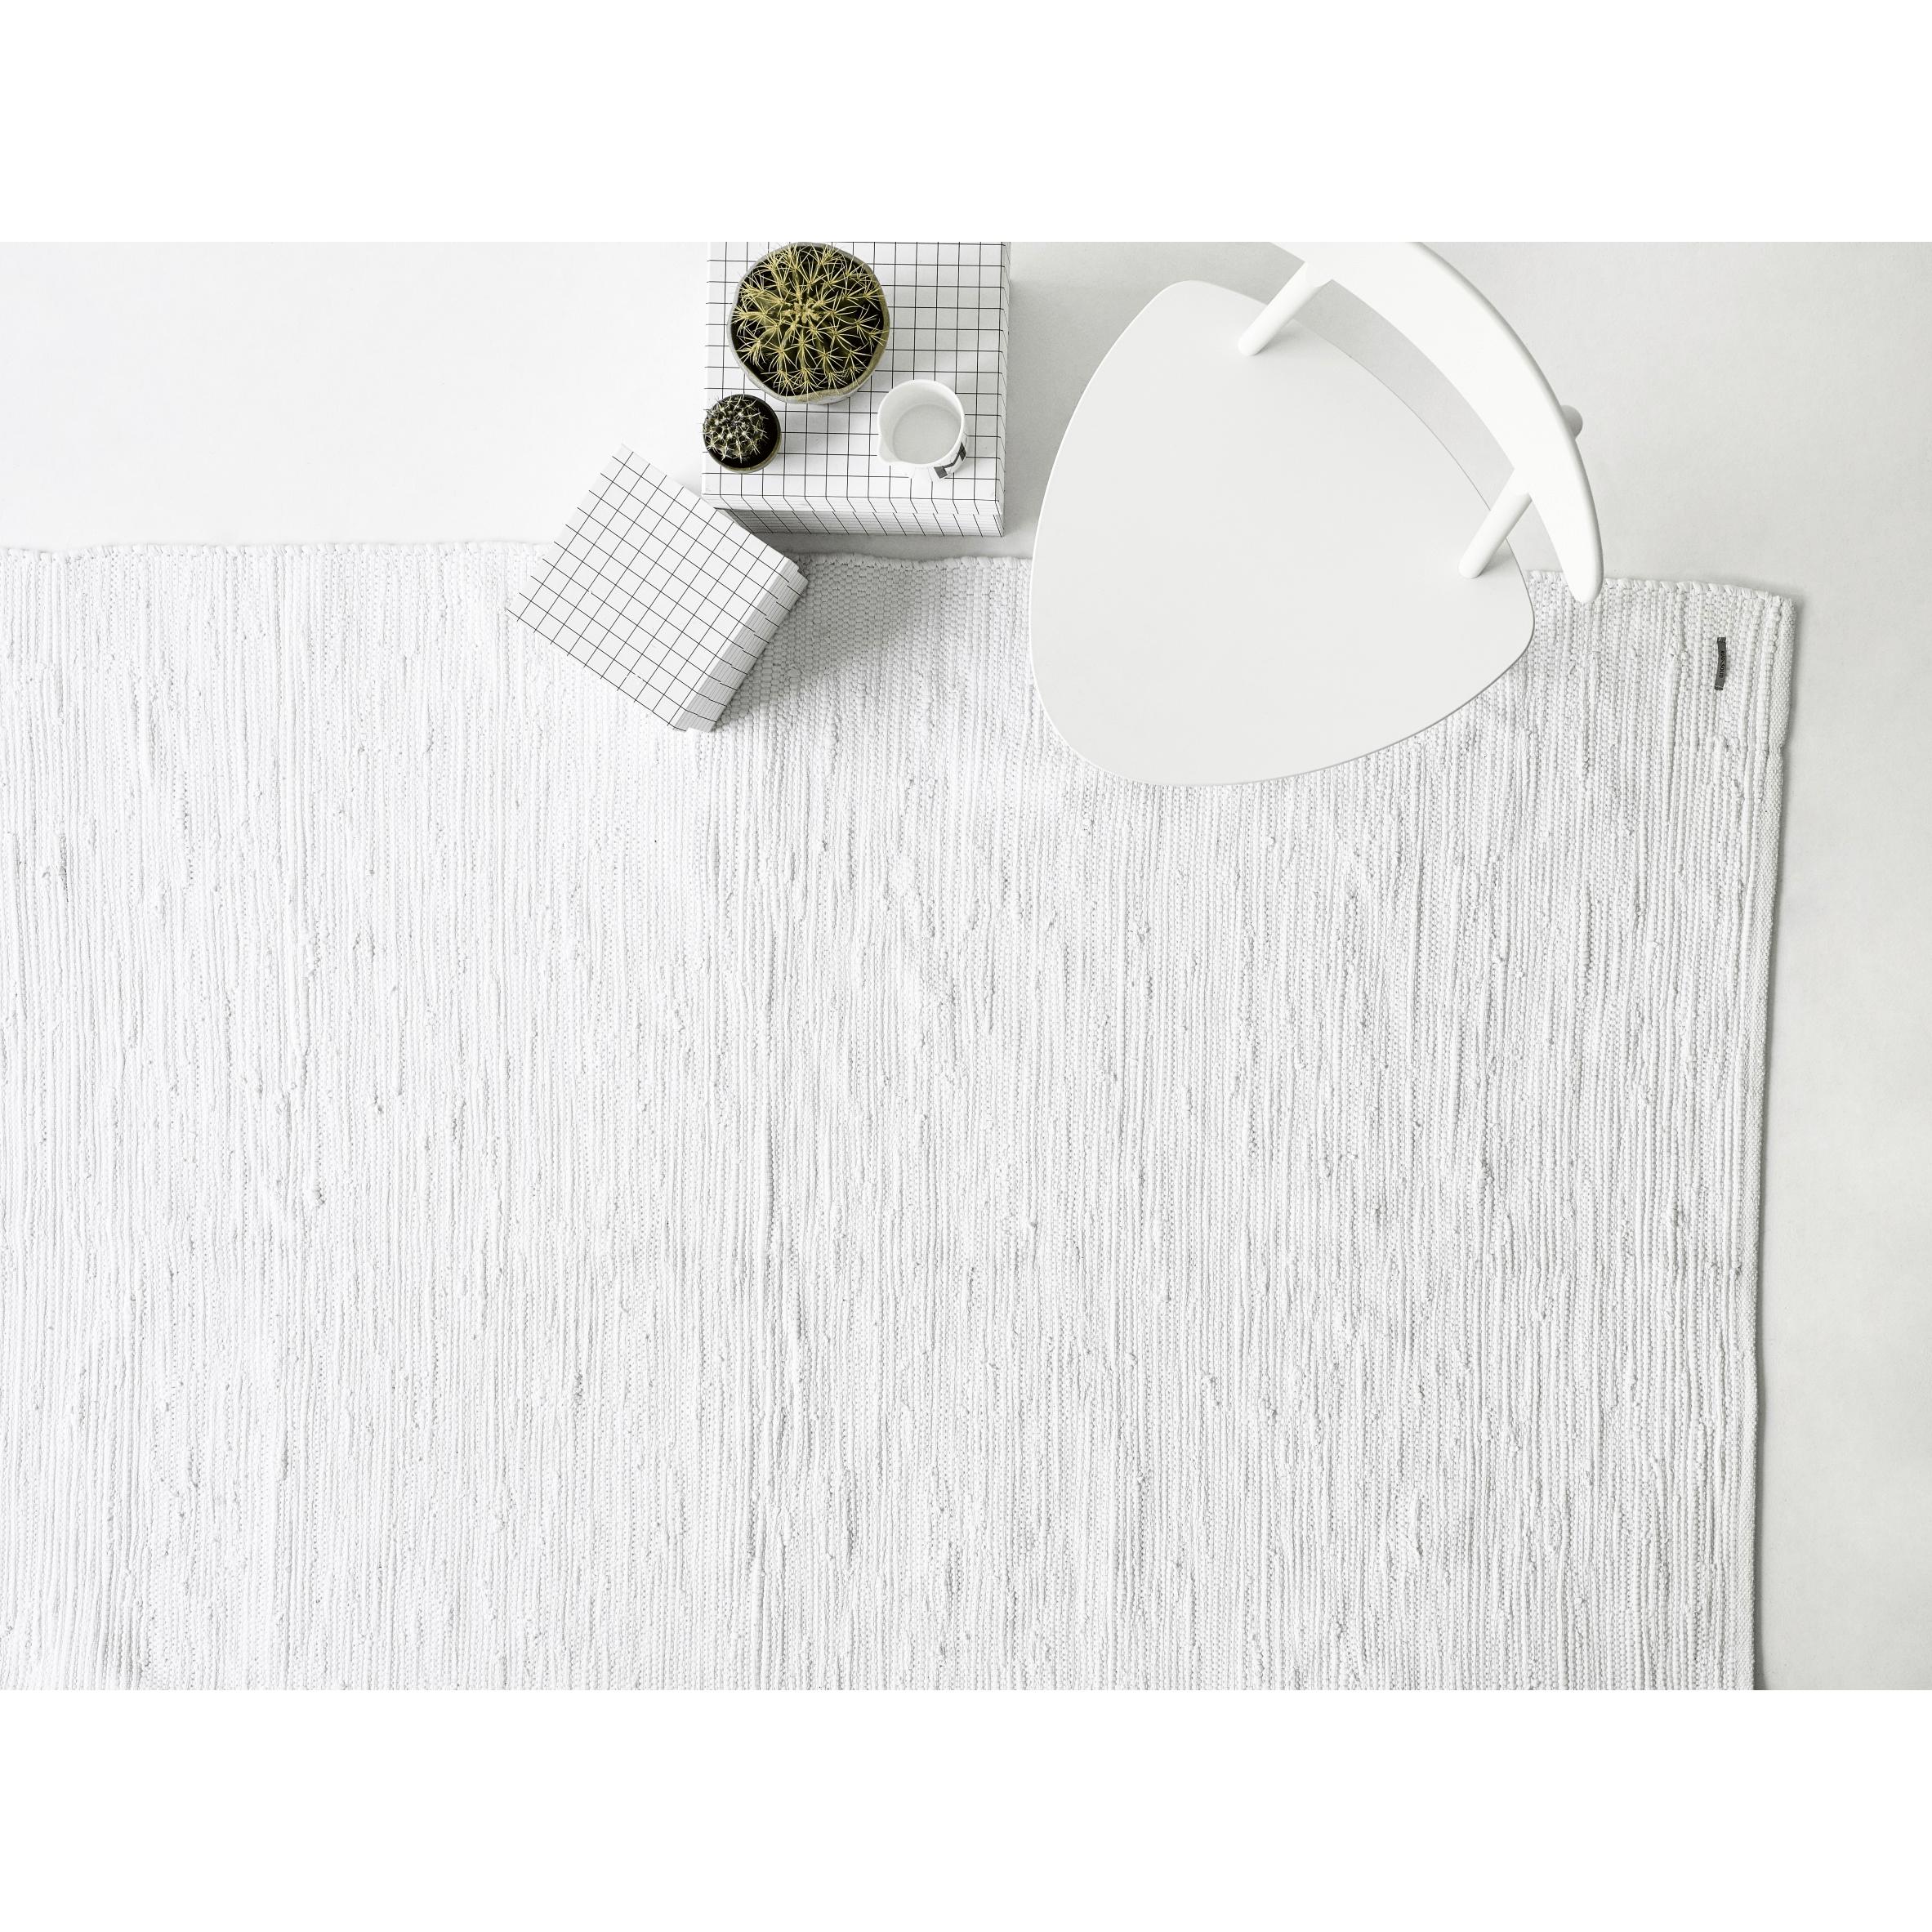 Rug Solid Baumwollteppich Weiß, 65 X 135 Cm